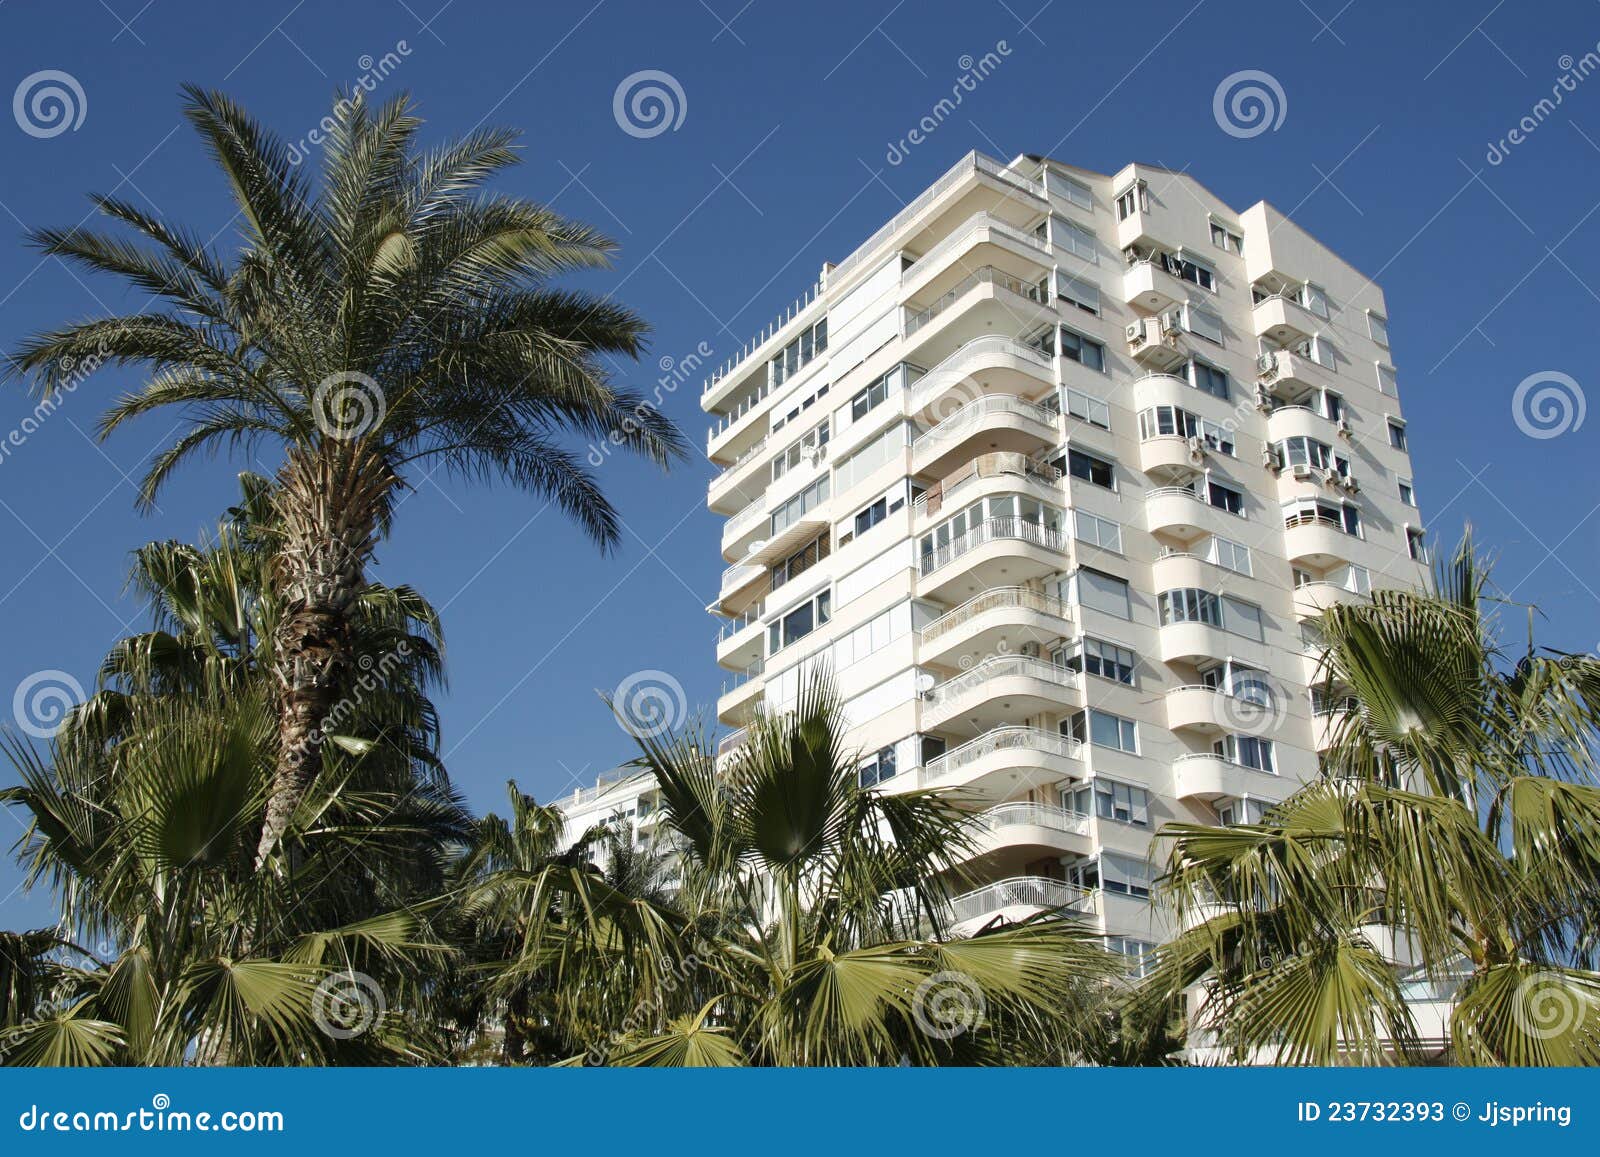 condominium at tropics